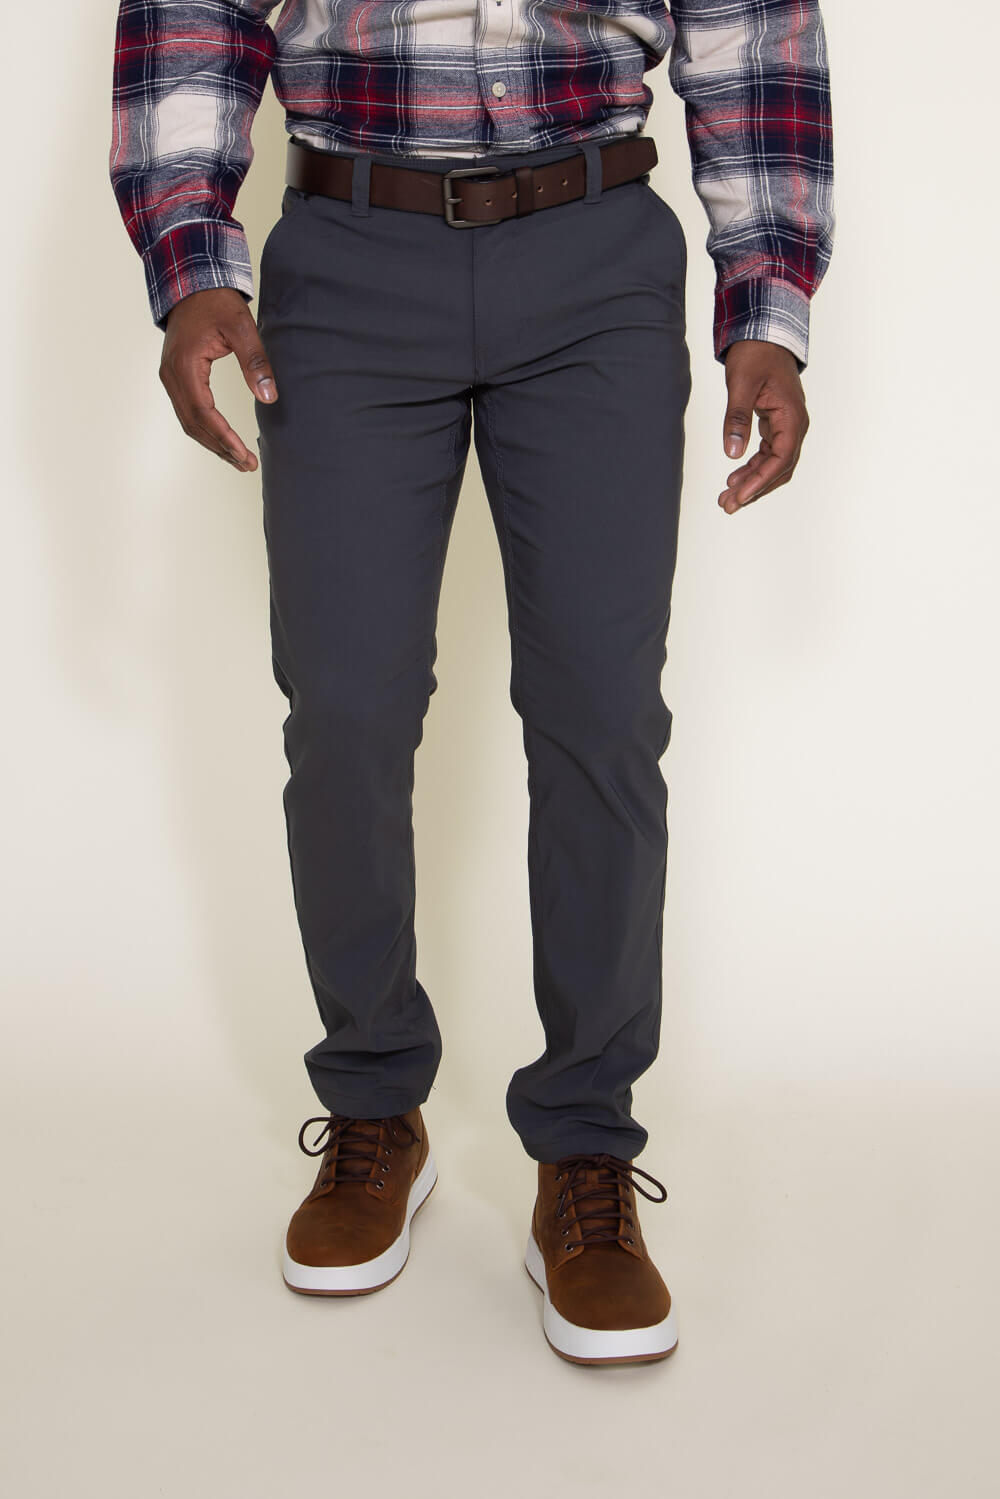 Weatherproof Vintage Faille Trouser Pants for Men in Grey | W3F800-IRO –  Glik's